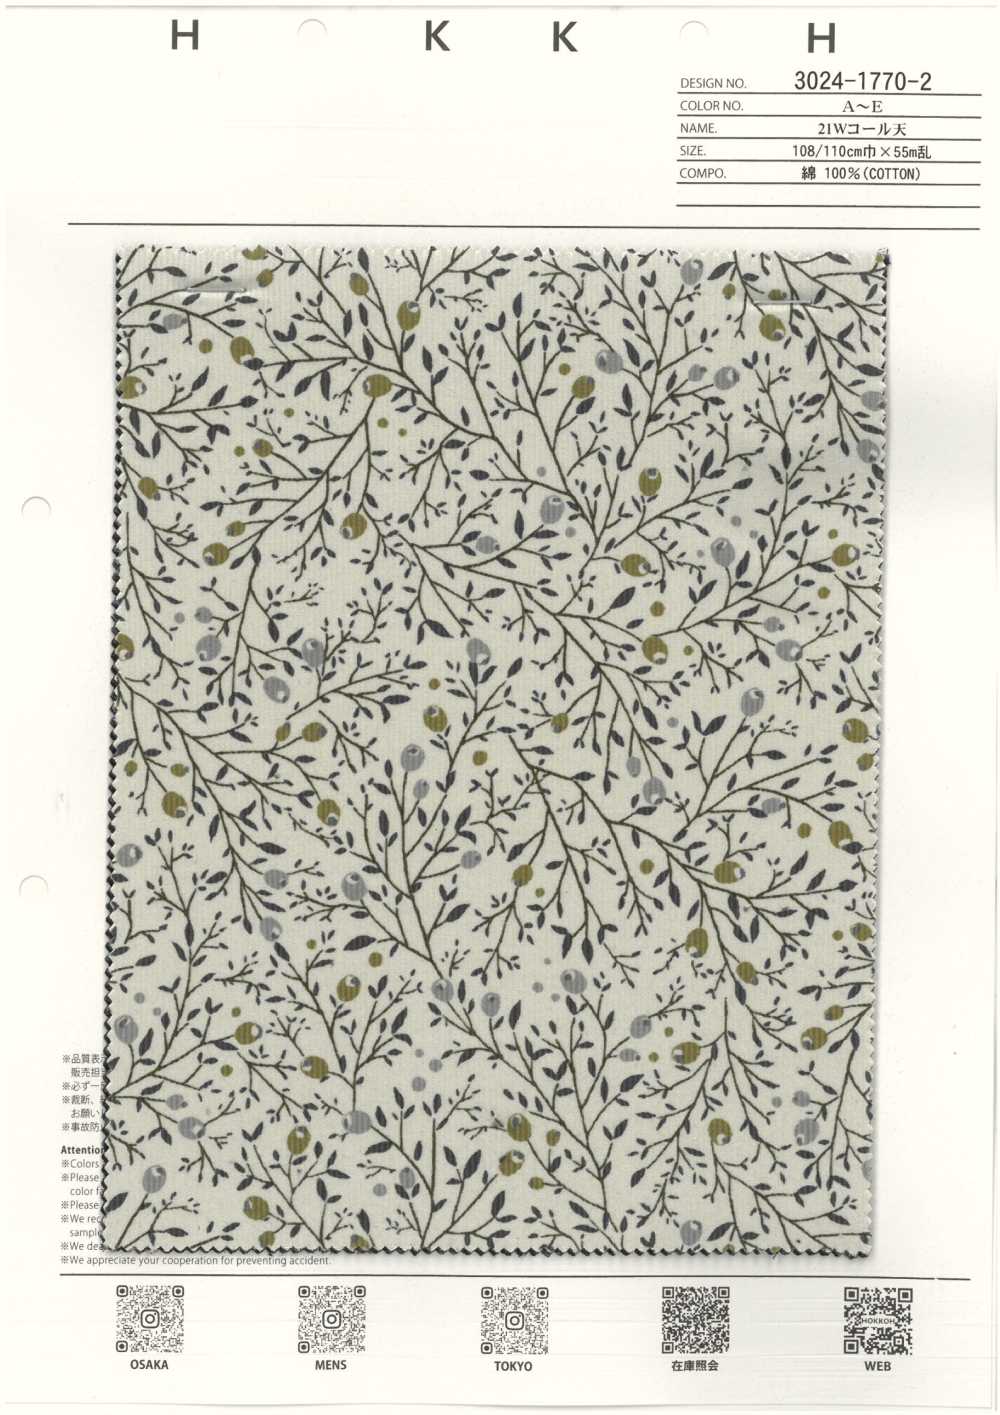 3024-1770-2 21W Corduroy[Textile / Fabric] HOKKOH